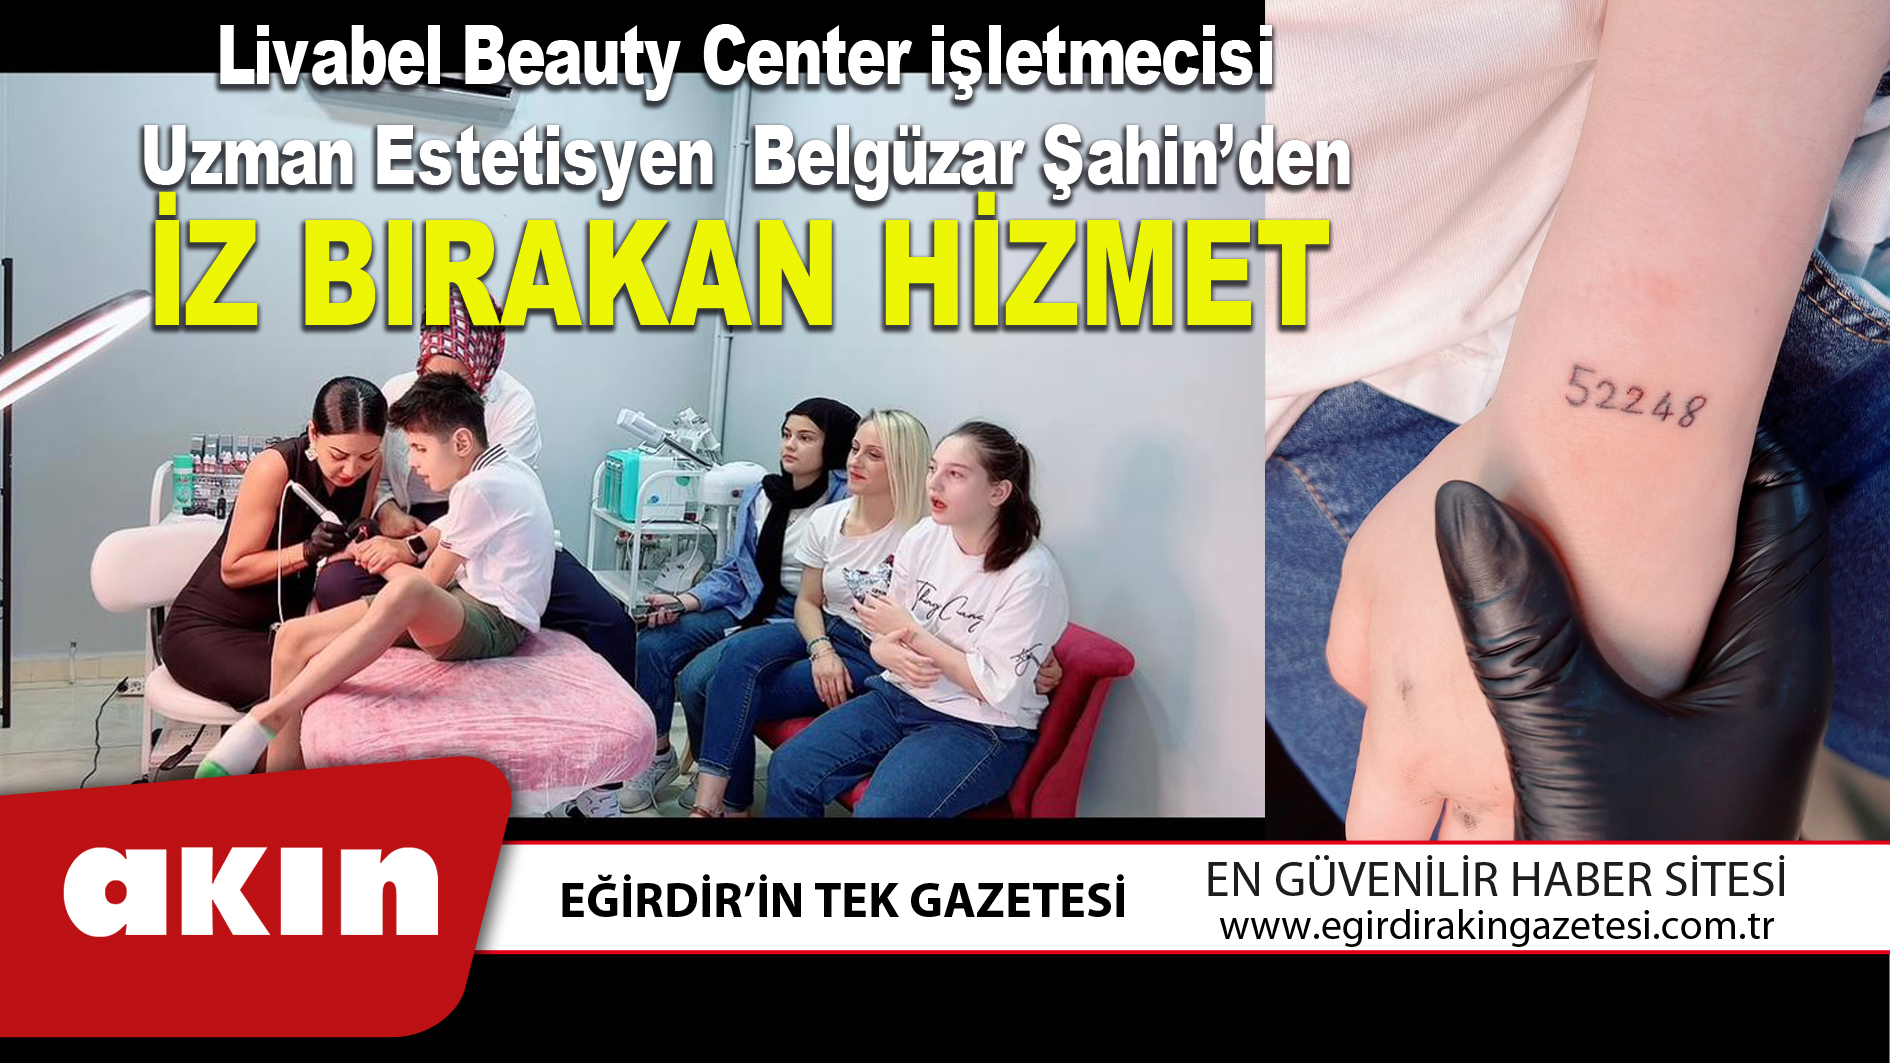 Livabel Beauty Center işletmecisi Uzman Estetisyen  Belgüzar Şahin’den İZ BIRAKAN HİZMET